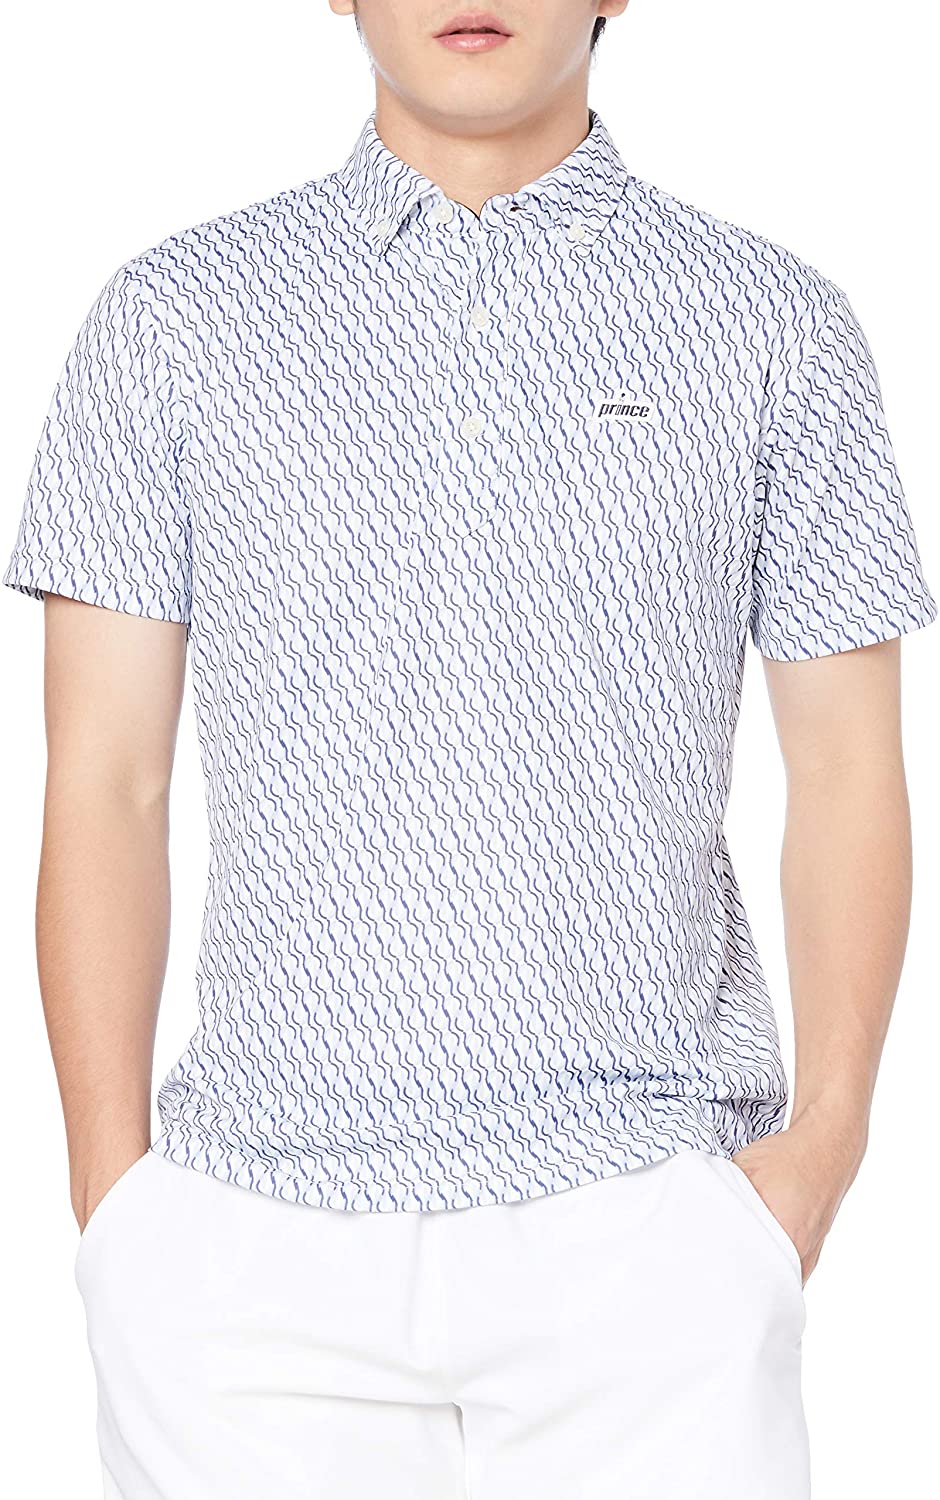 シンプルなボタンダウンのポロシャツ メーカー希望小売価格：6,500円(税別) カラー：ホワイト×ネイビー サイズ： 素材：ライトニット(ポリエステル100%) 機能：吸汗速乾、UPF50 性別：Unisex